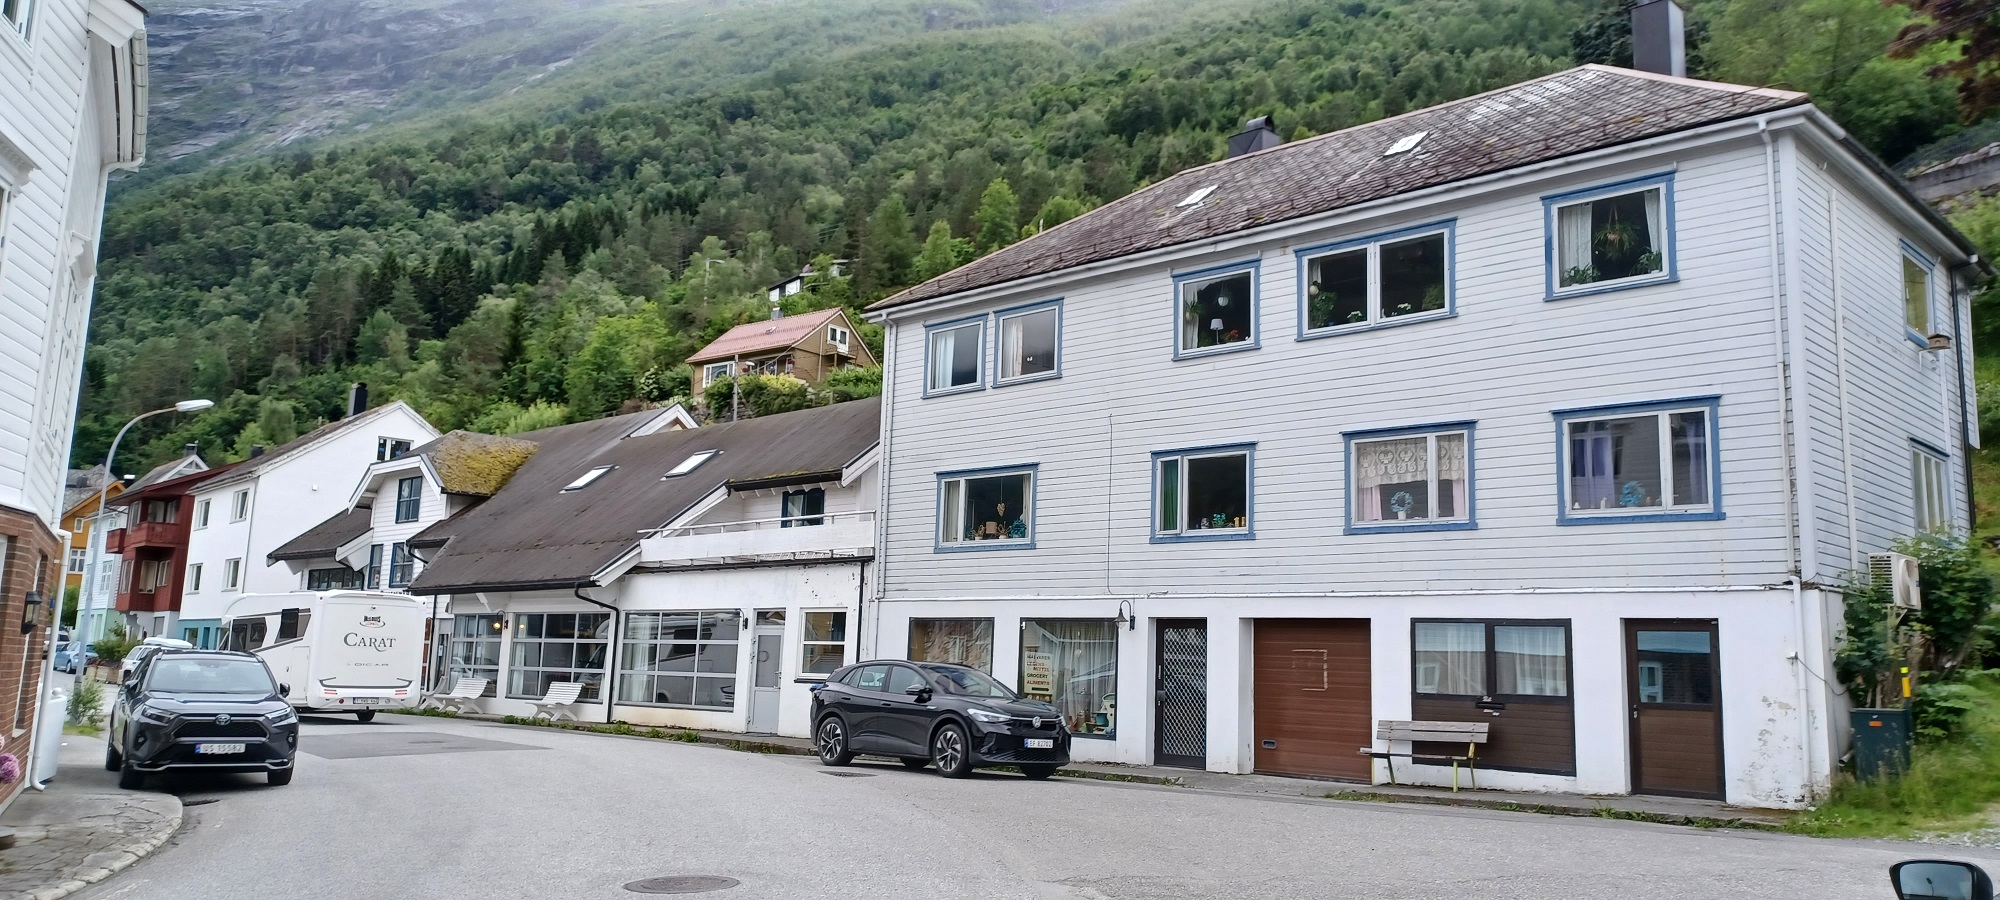 Tipikus norvég utcakép. Sötét autók, faházak, hol függönyös, hogy függönytelen ablakok, kacatokkal ékesítve